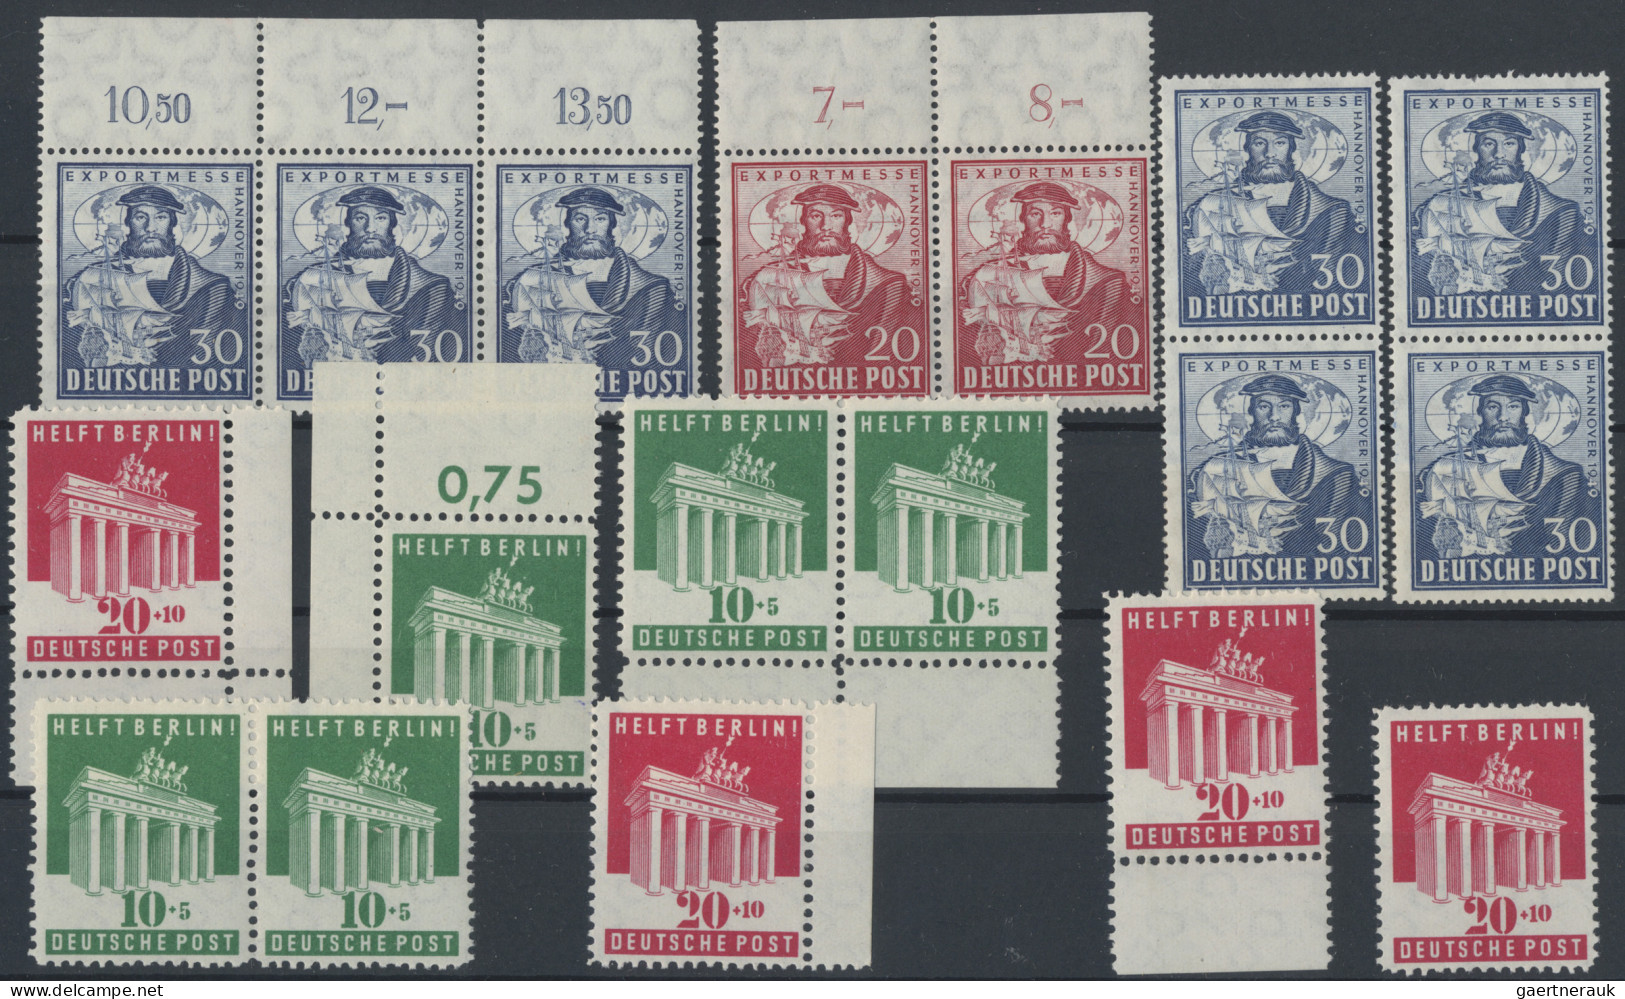 Bizone: 1948/1948, Sondermarken, meist postfrische bzw. gestempelte Partie auf S